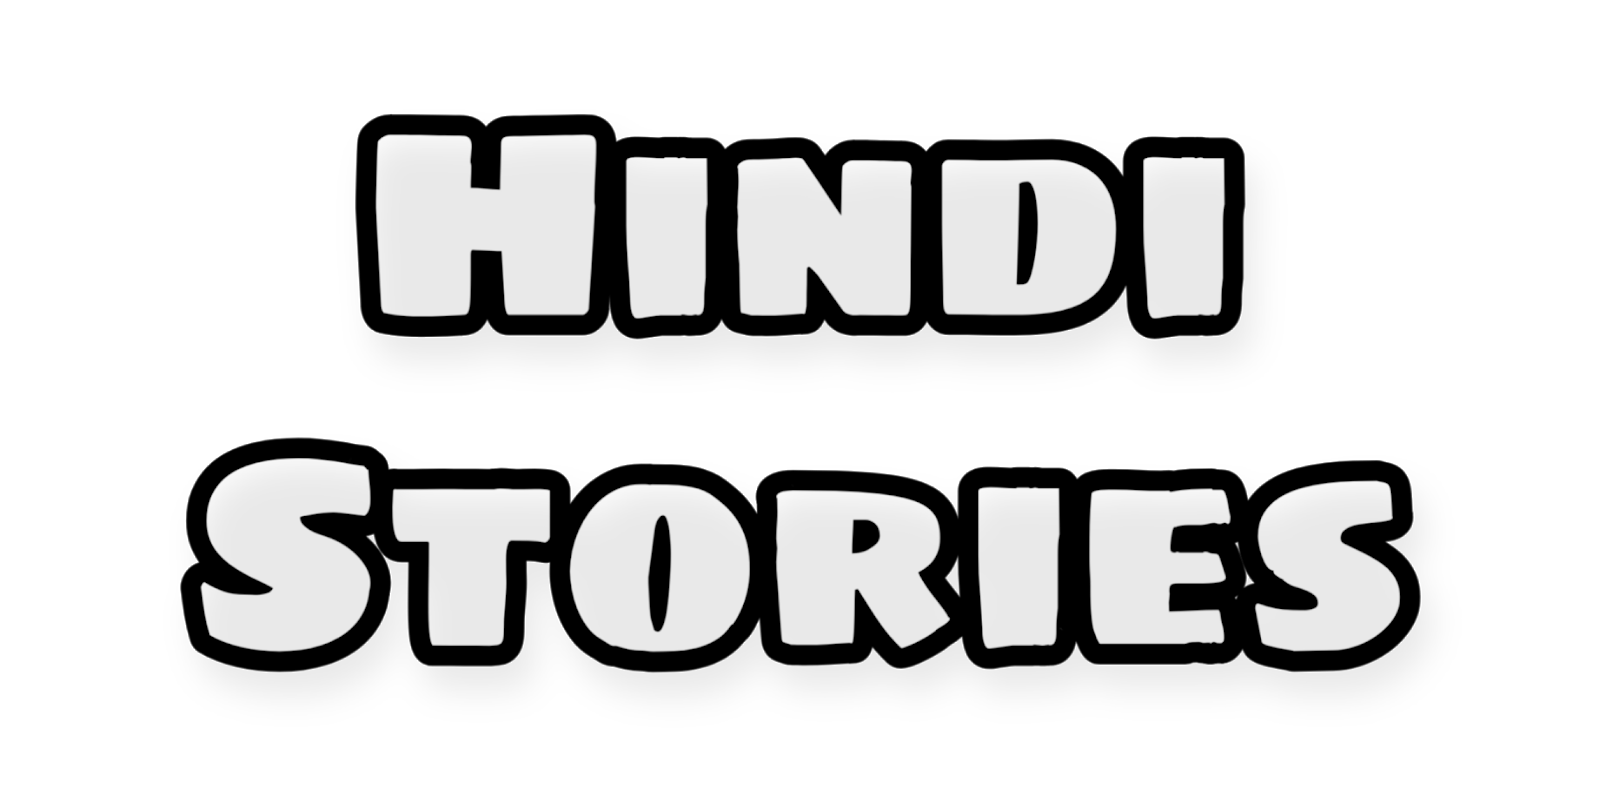 Hindi Story